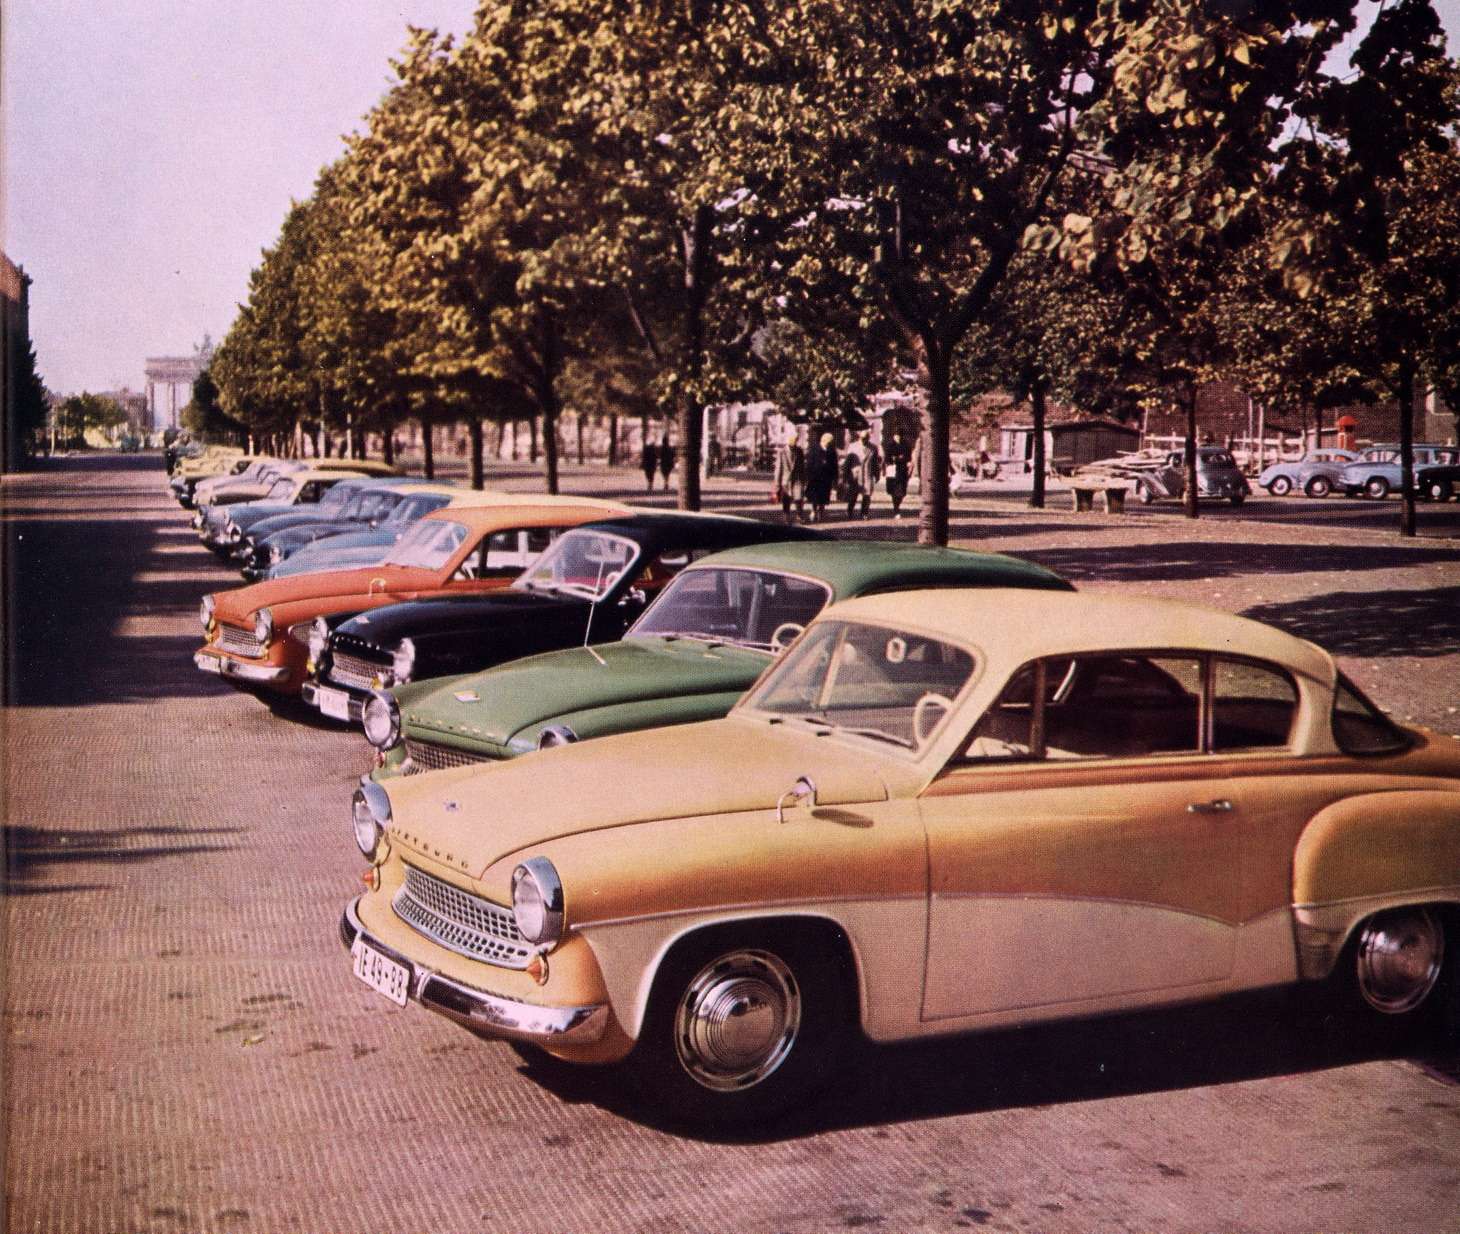 Первой моделью, вновь получившей название Wartburg, стала в 1955 году AWE-311. Без преувеличения, это был самый красивый легковой автомобиль восточного блока. В СССР все еще делали «Победу»… Снимок сделан в Берлине на Унтер-ден-Линден, напротив советского посольства